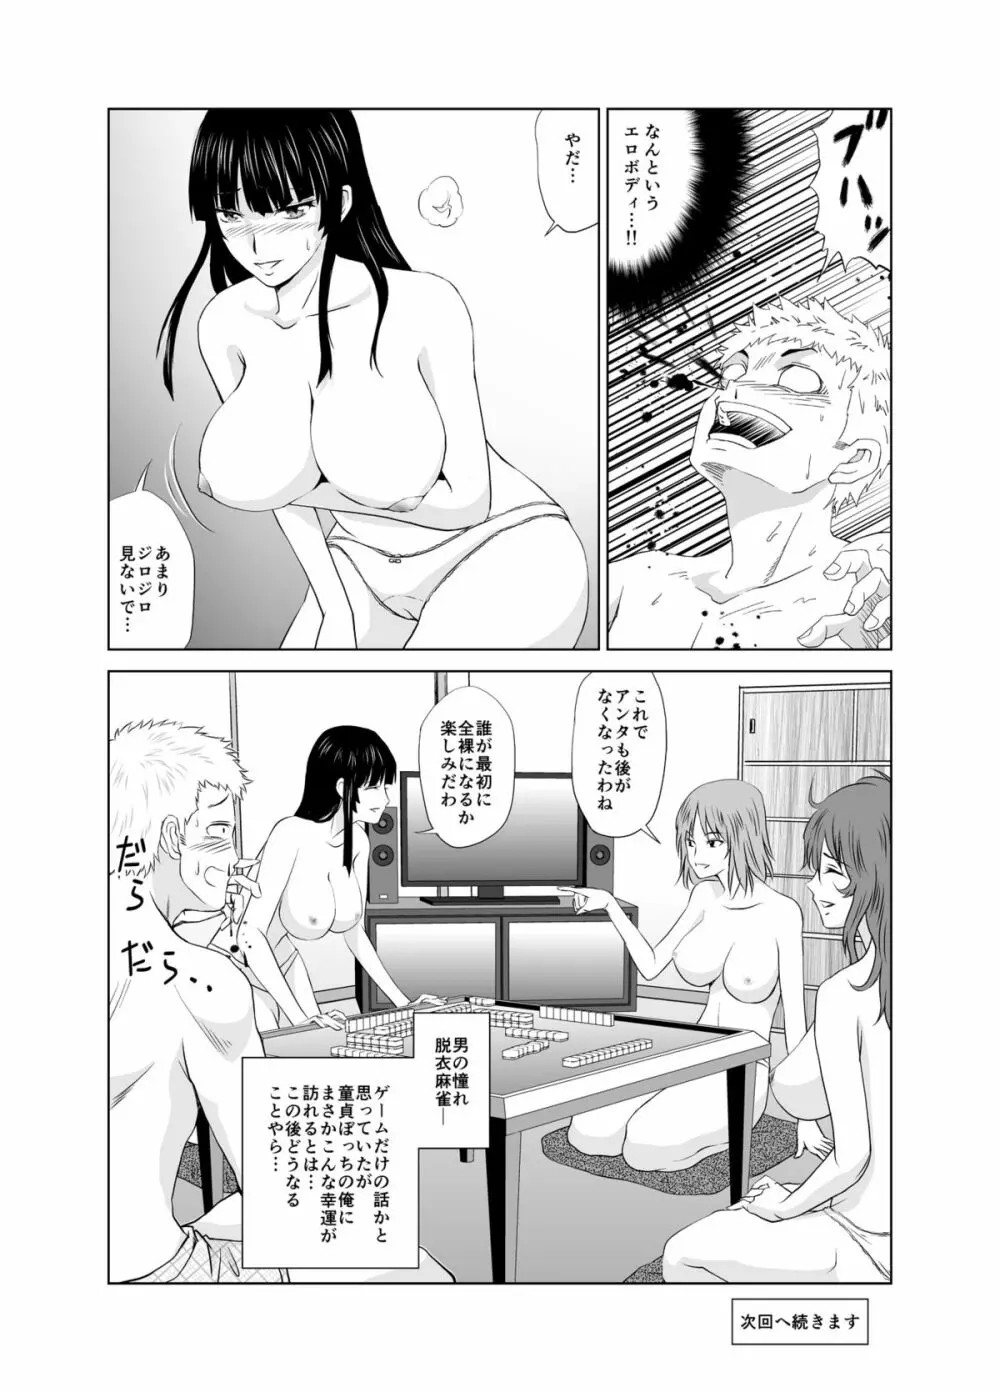 脱衣麻雀～漫画編～【完成版】 Page.3